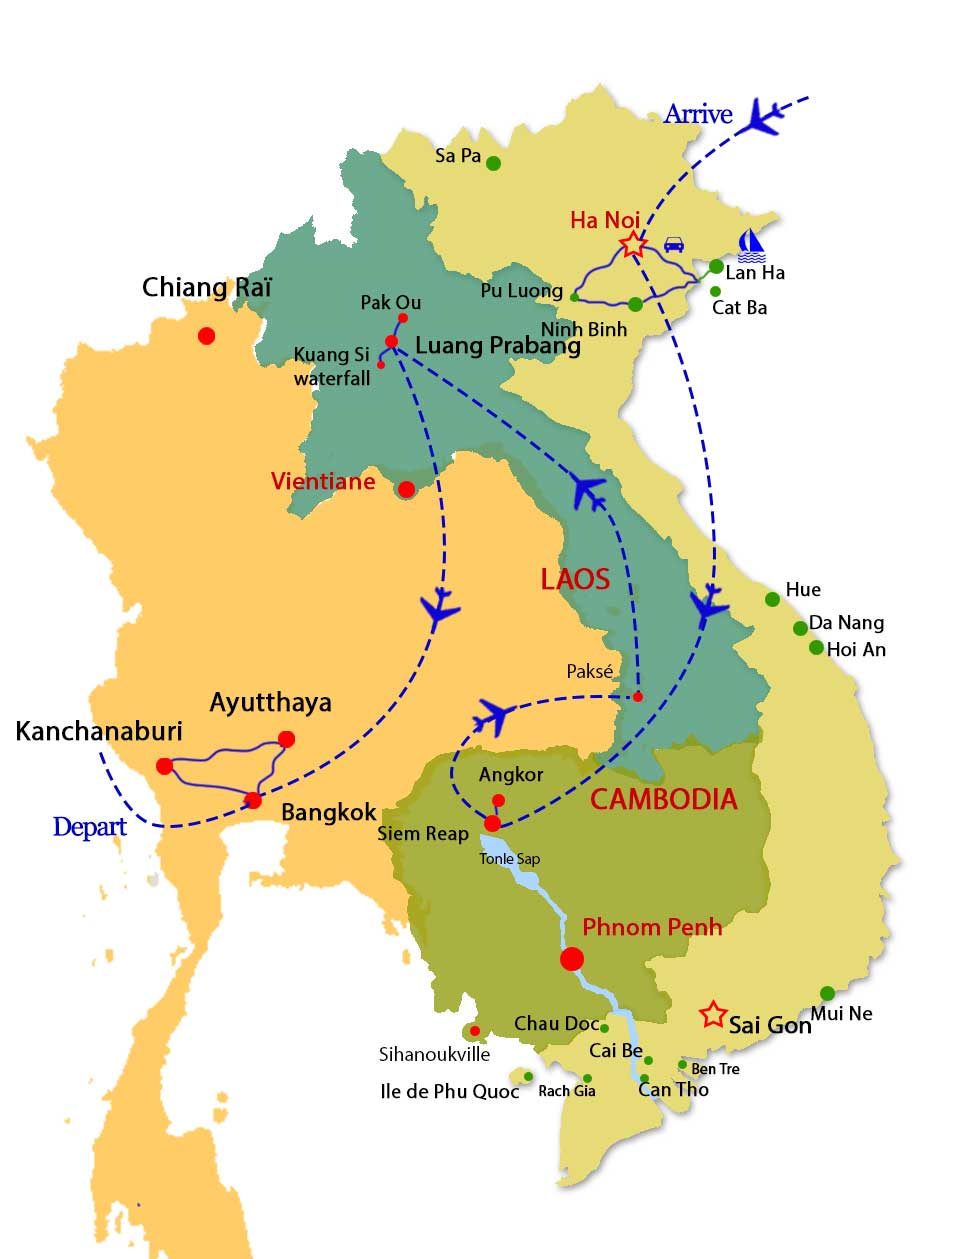 Vietnam Cambodia Laos et Thailand